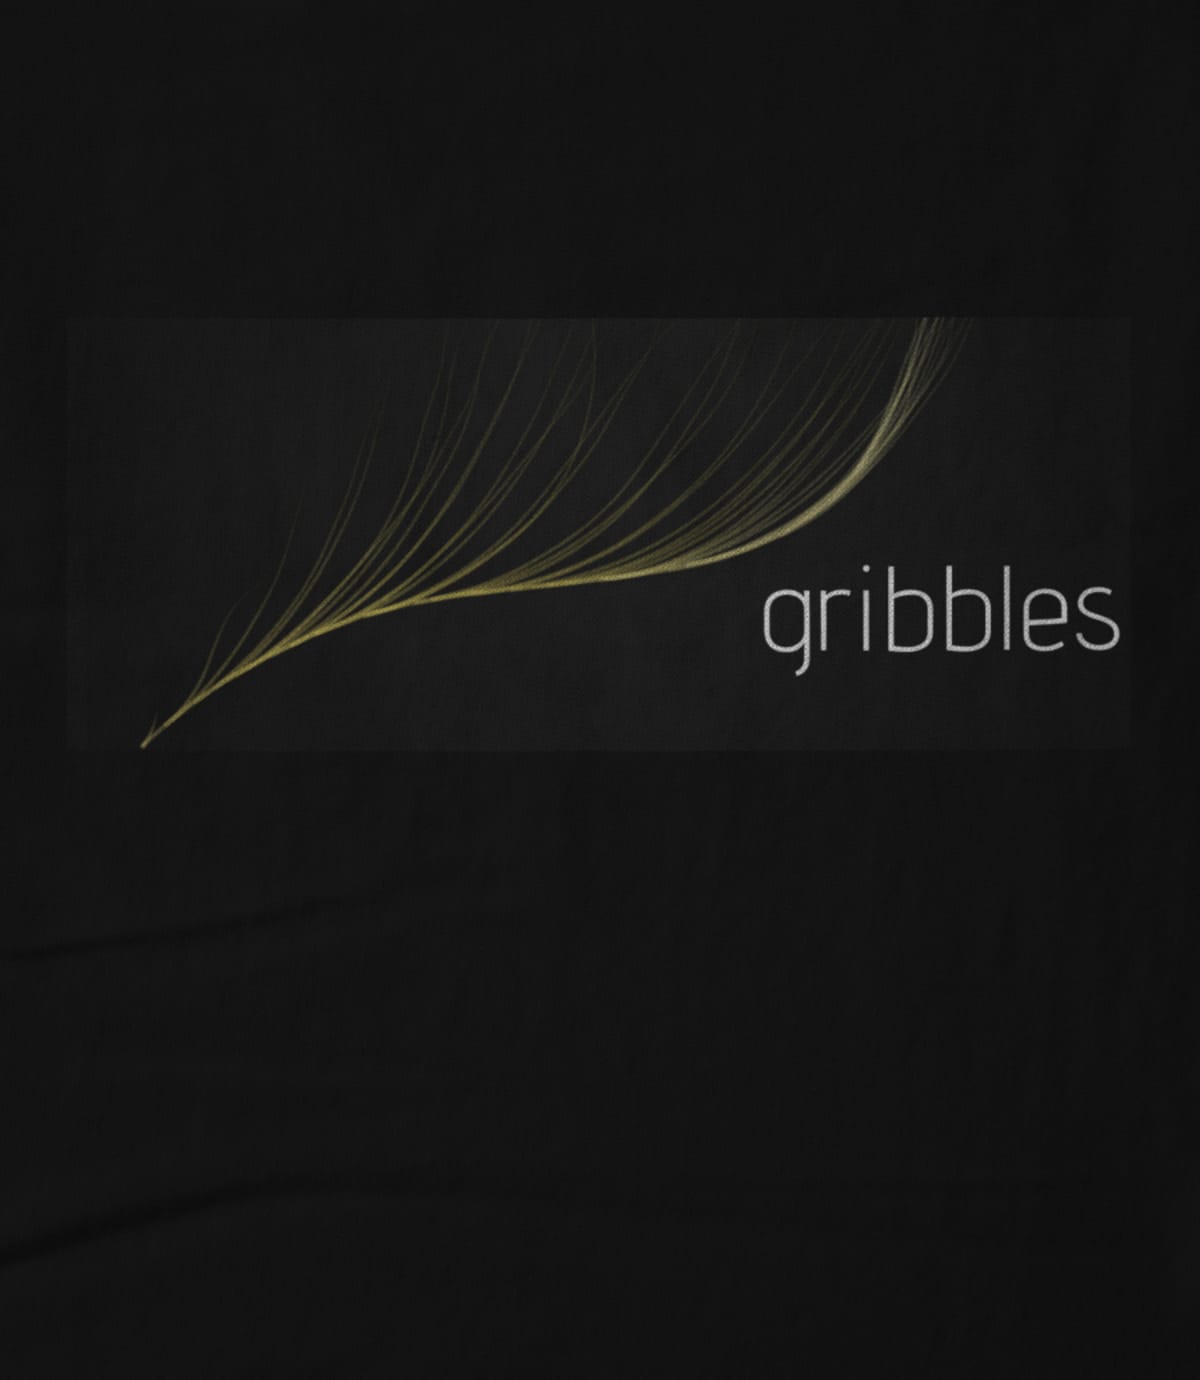 gribbles